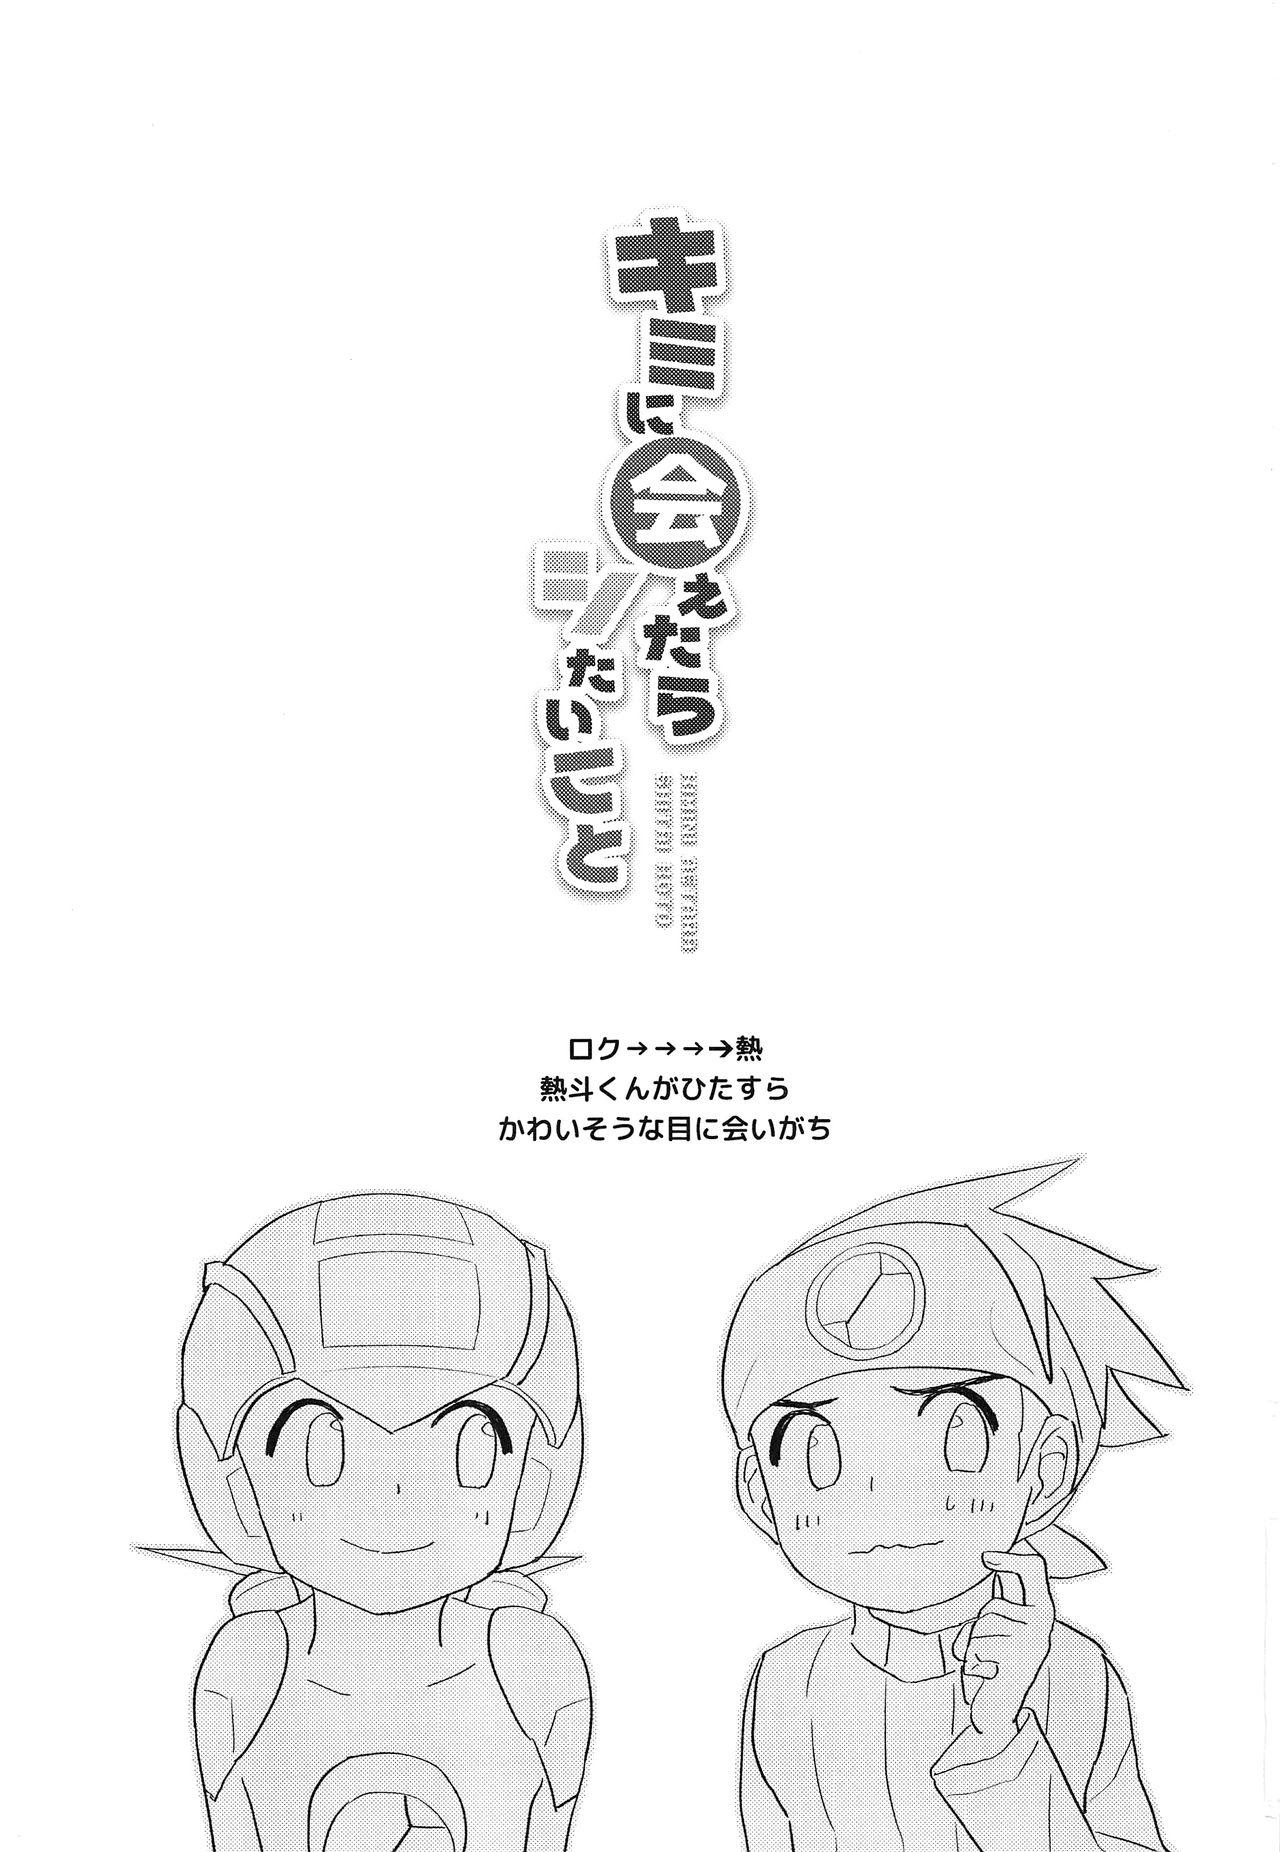 Ghetto Kimi ni Aetara Shitai Koto - Megaman battle network Pervert - Page 2